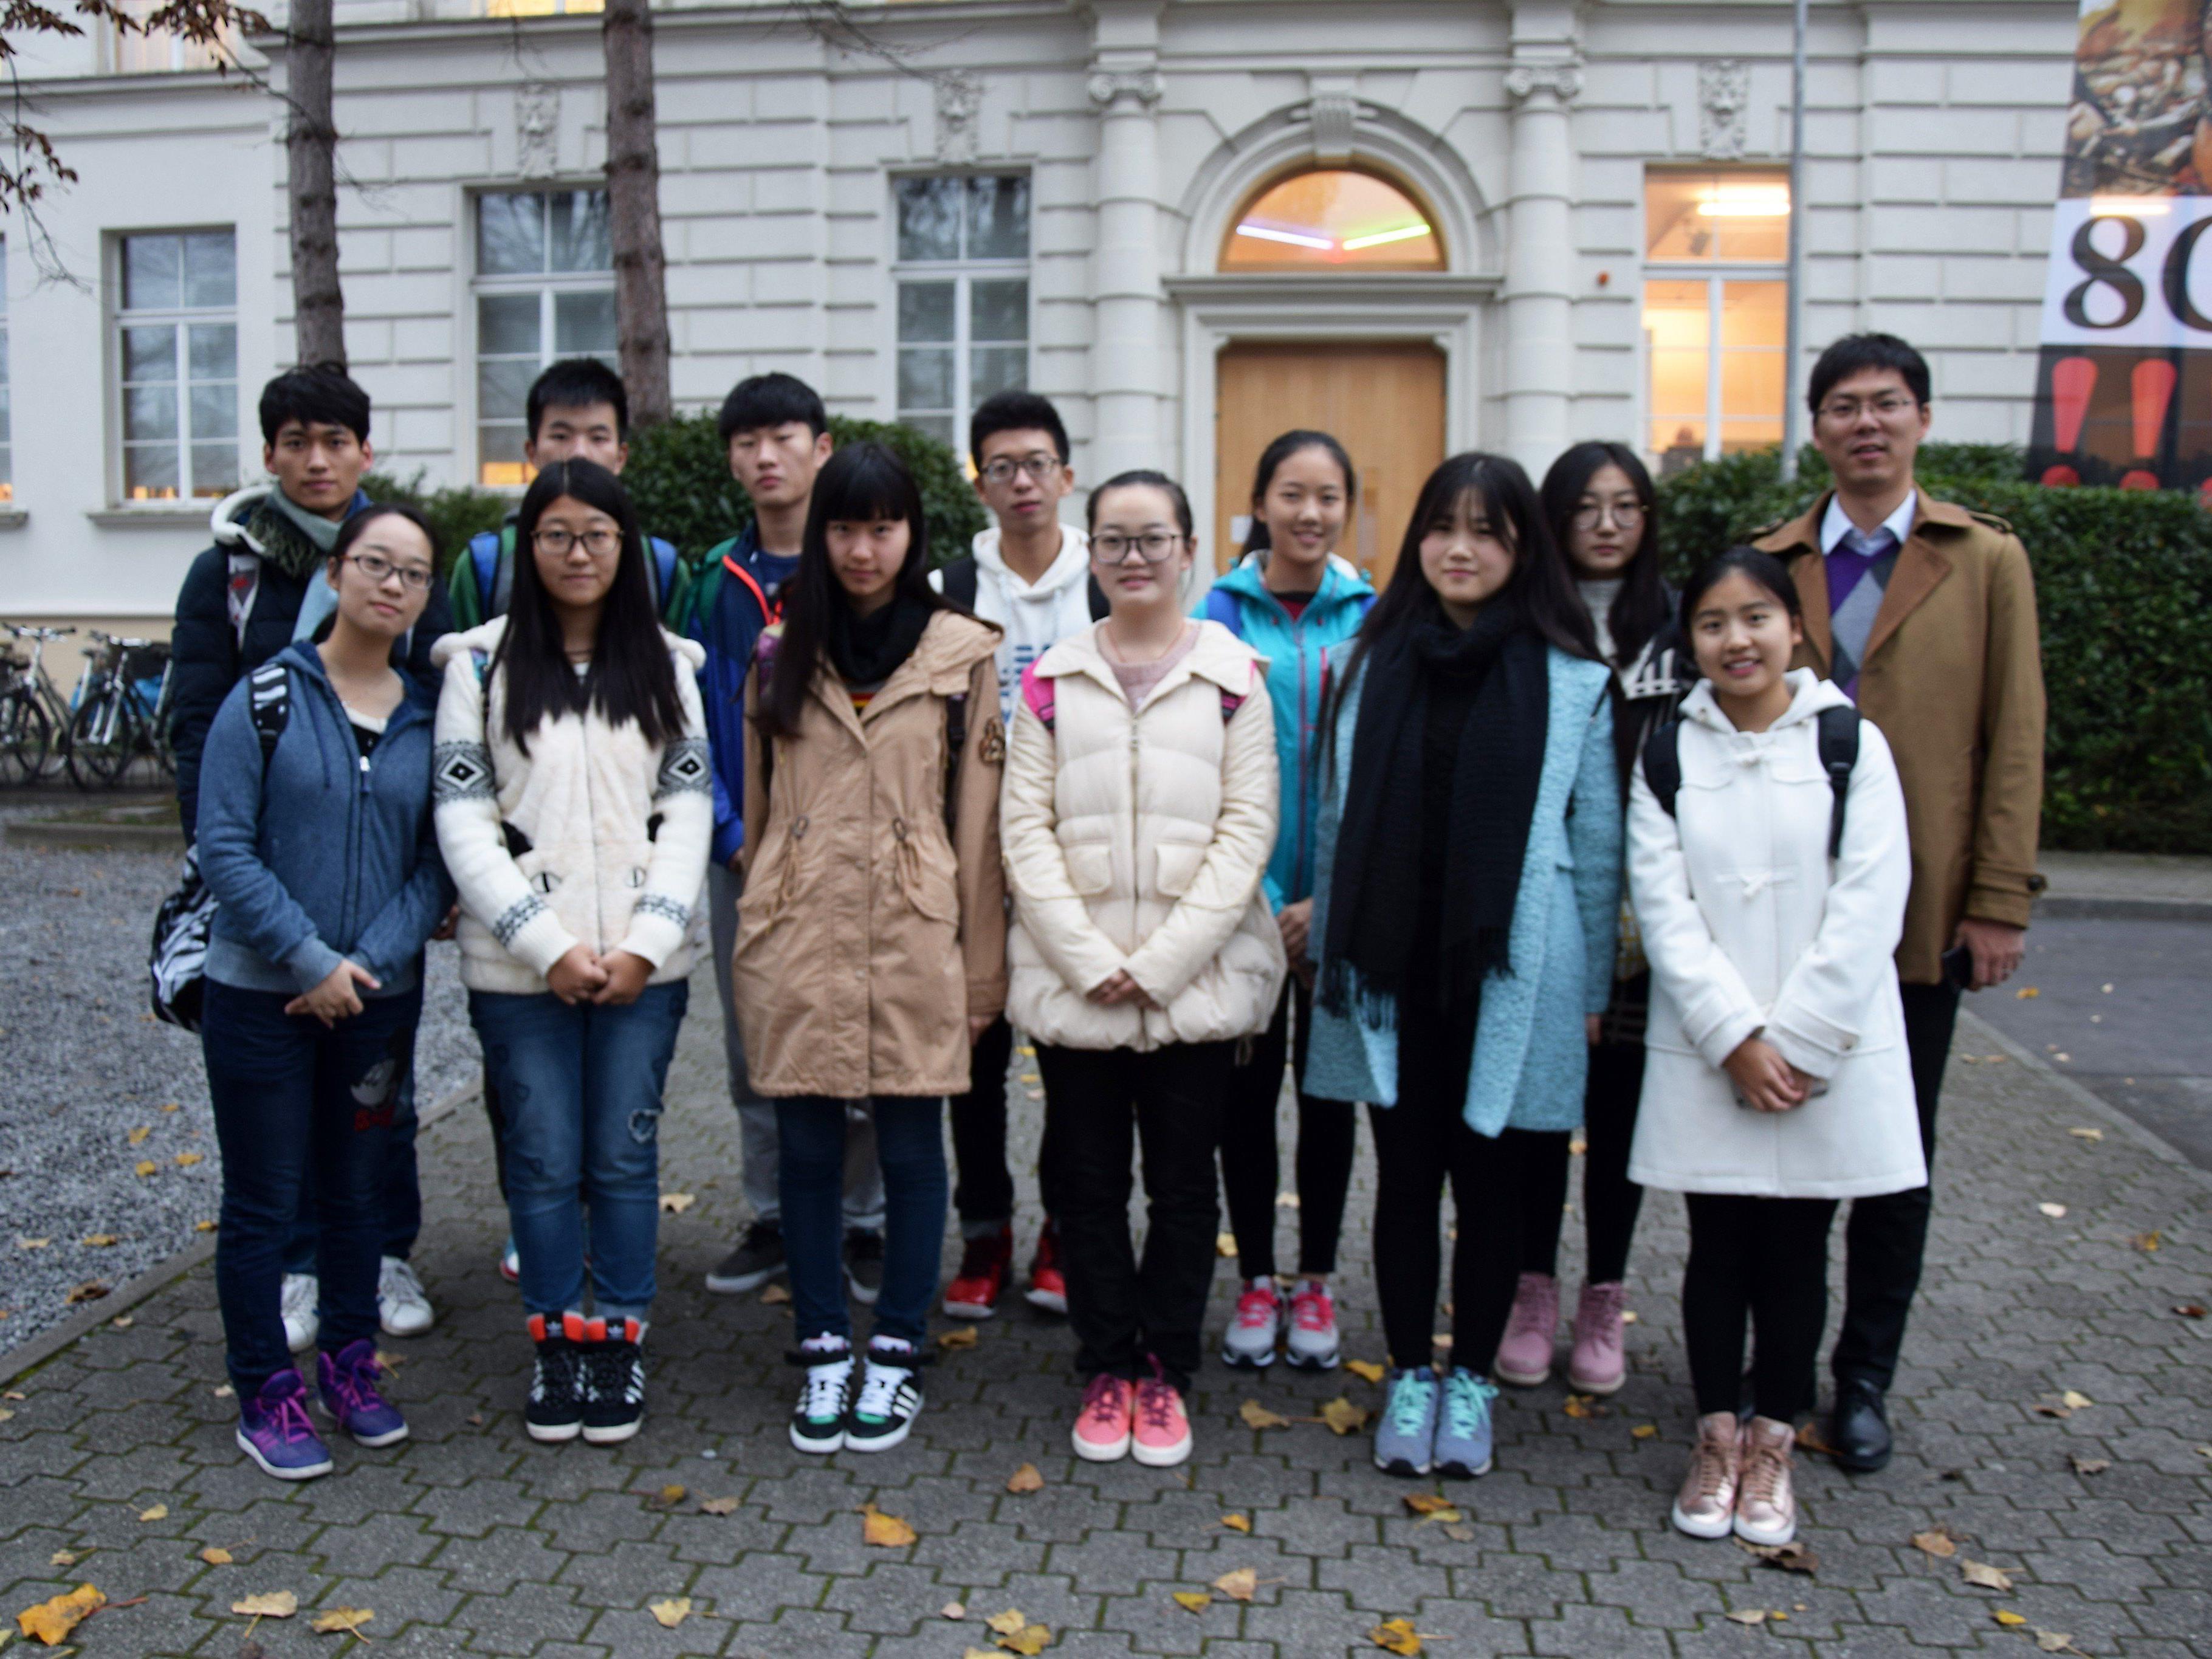 Die Jugendlichen waren aus dem 10.000 km entfernten Nanjing angereist.